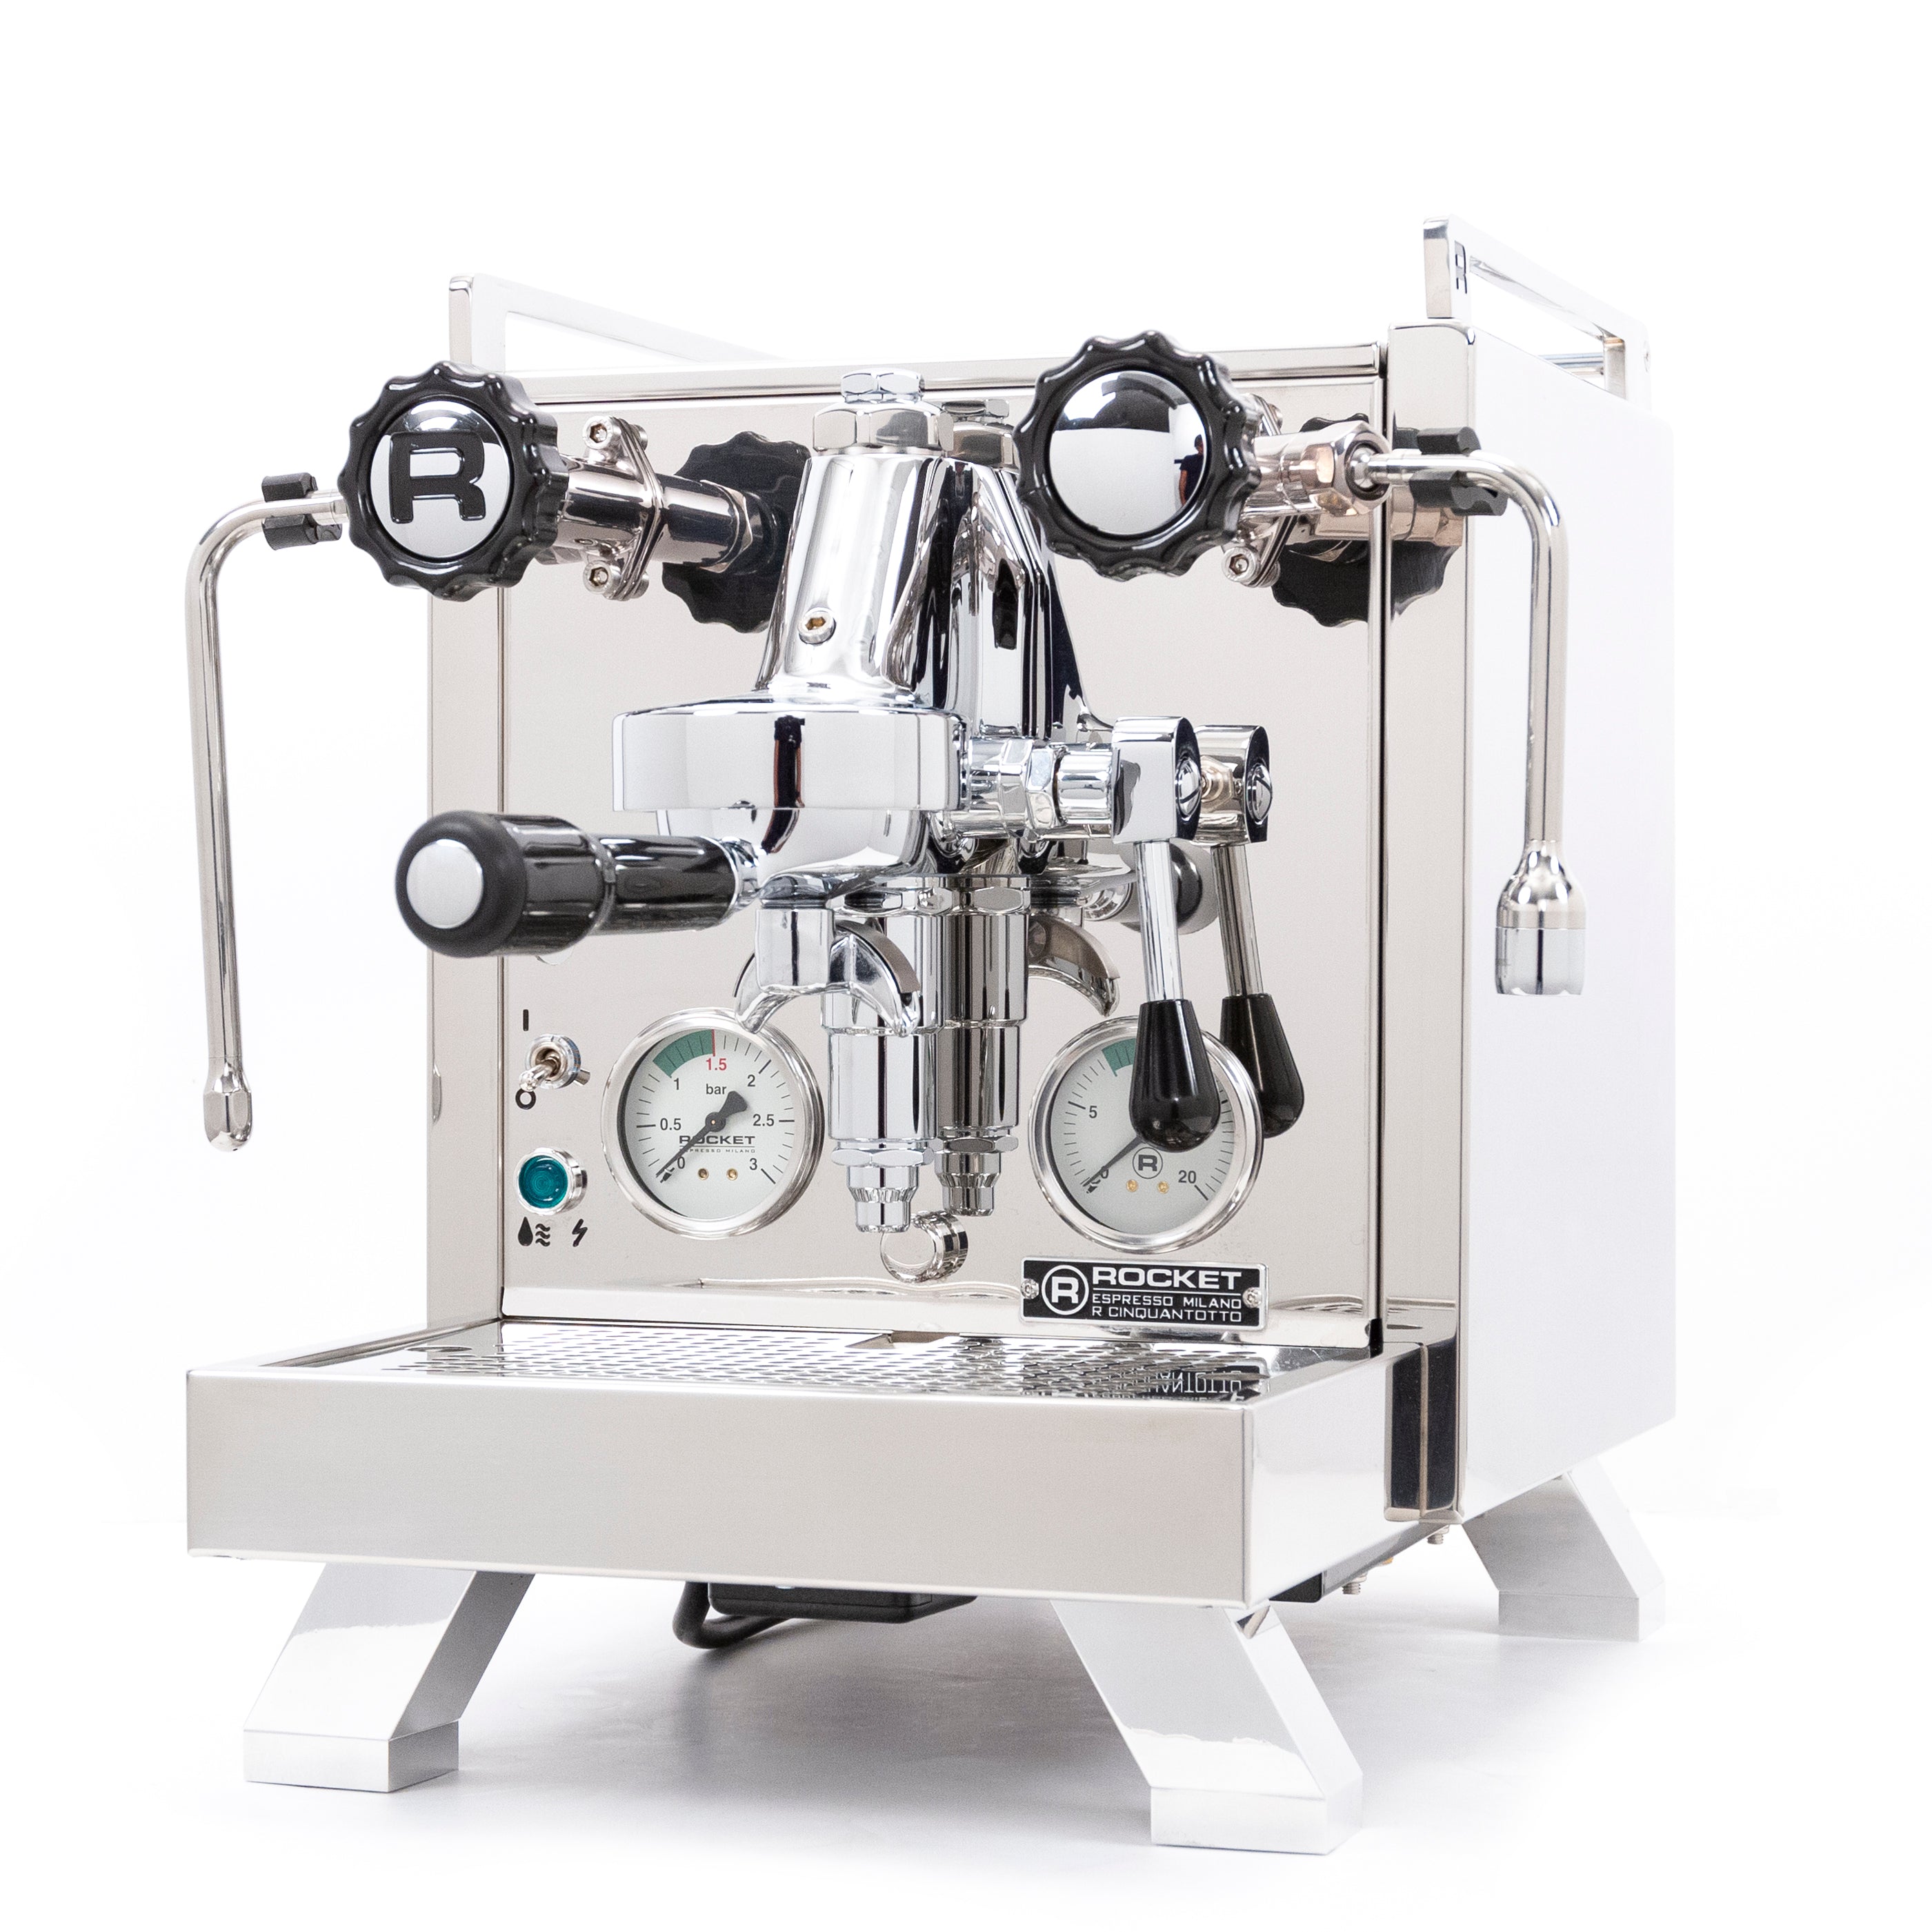 Rocket Espresso R Cinquantotto Espresso Machine – Whole Latte Love